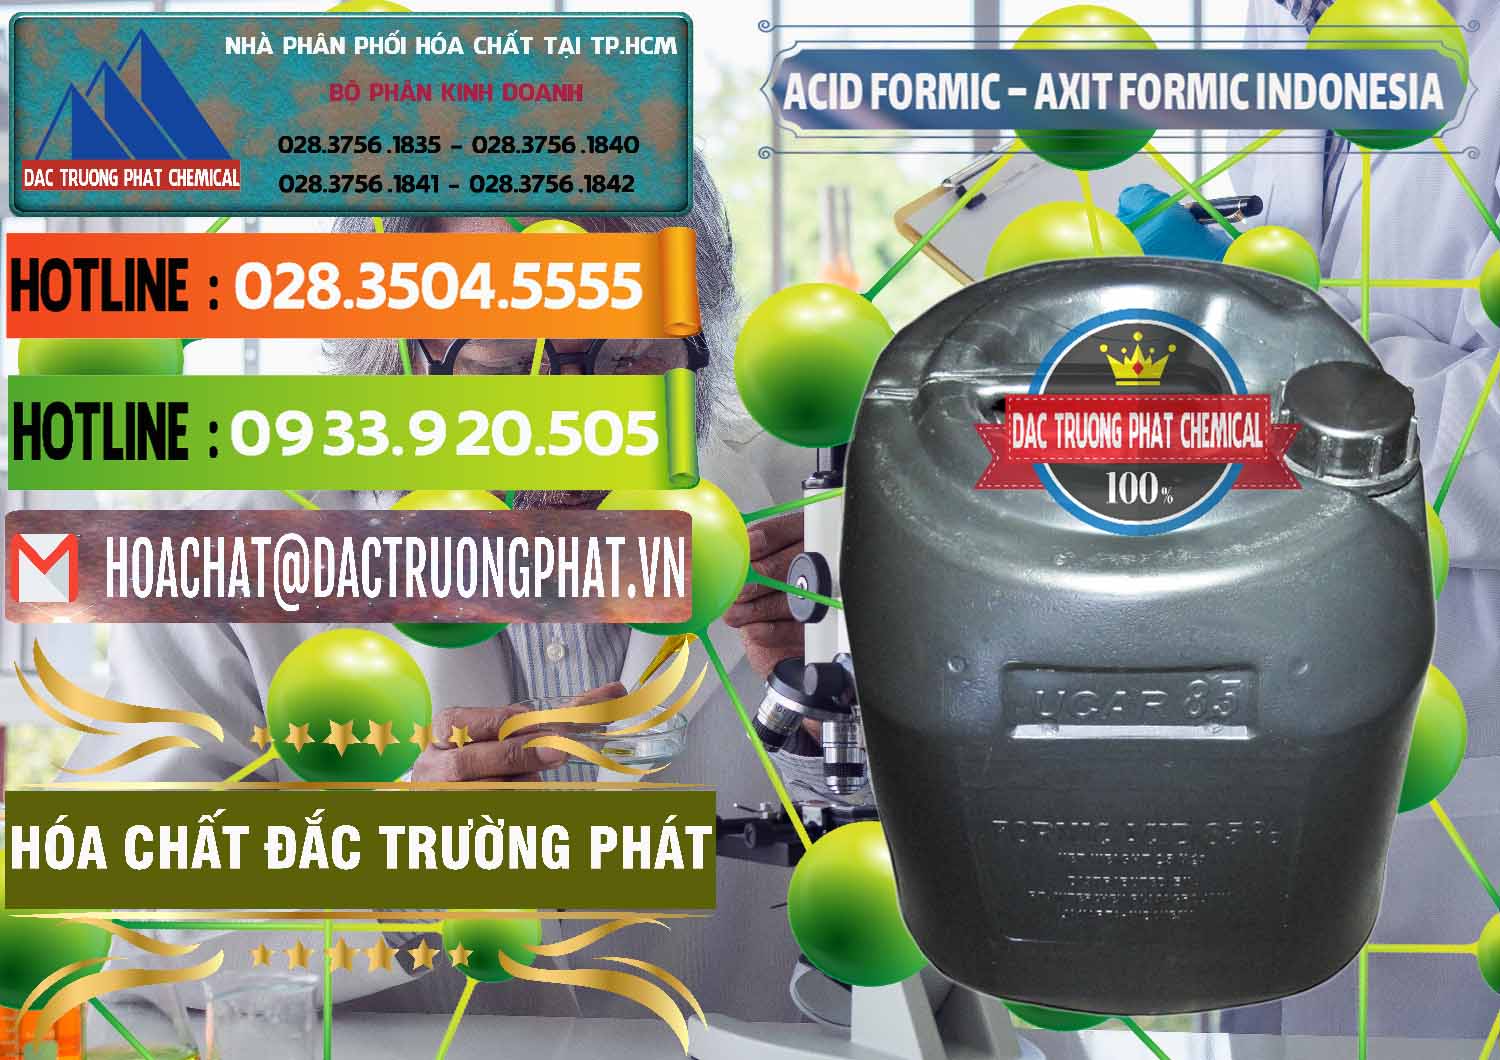 Nơi cung ứng - bán Acid Formic - Axit Formic Indonesia - 0026 - Đơn vị kinh doanh _ phân phối hóa chất tại TP.HCM - cungcaphoachat.com.vn